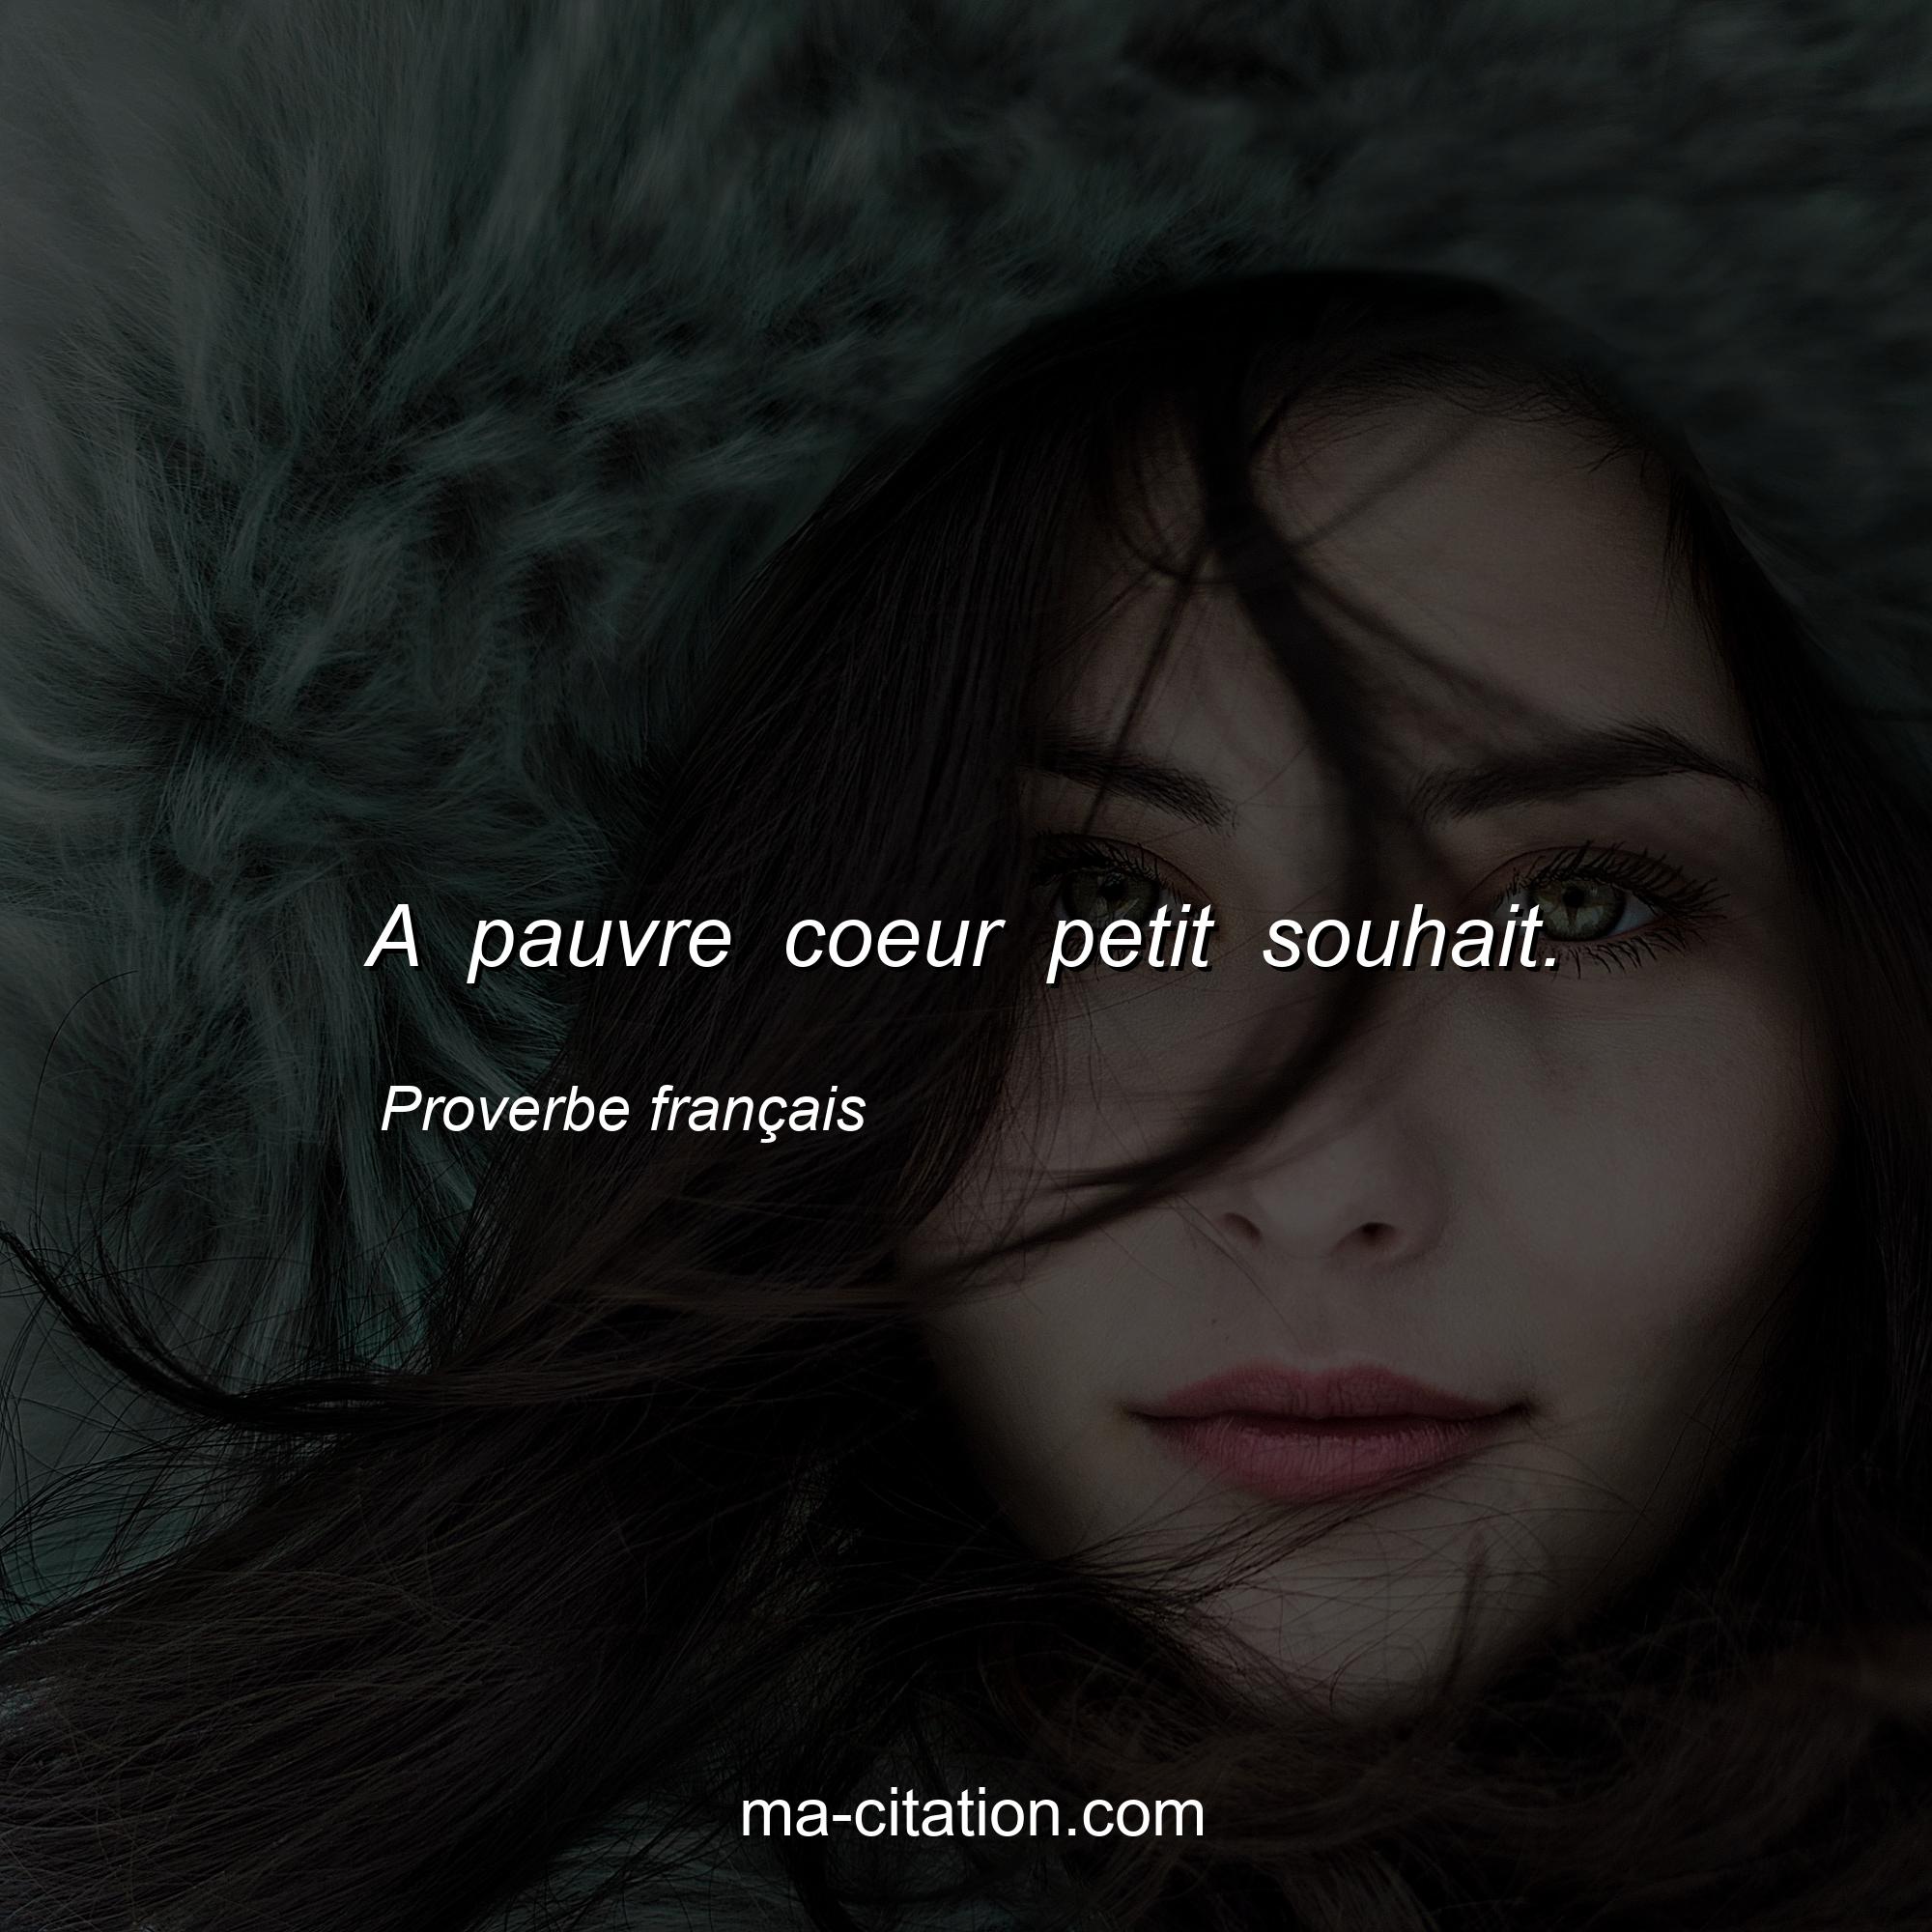 Proverbe français : A pauvre coeur petit souhait.